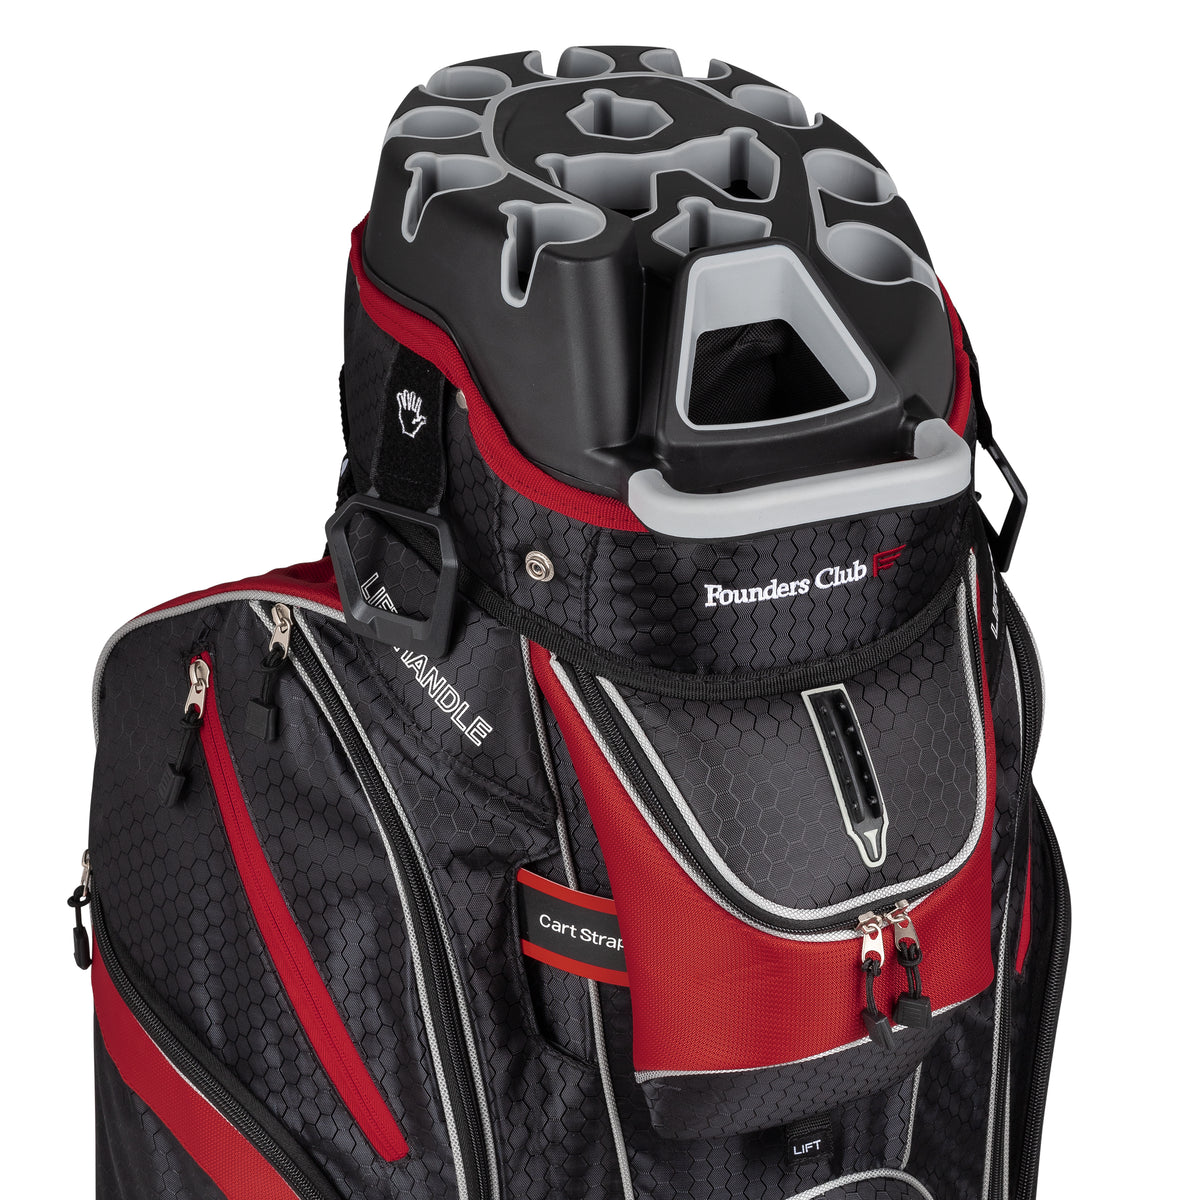 Founders Club 3rd Generation Premium Organizer 14 Way Golf Cart Bag